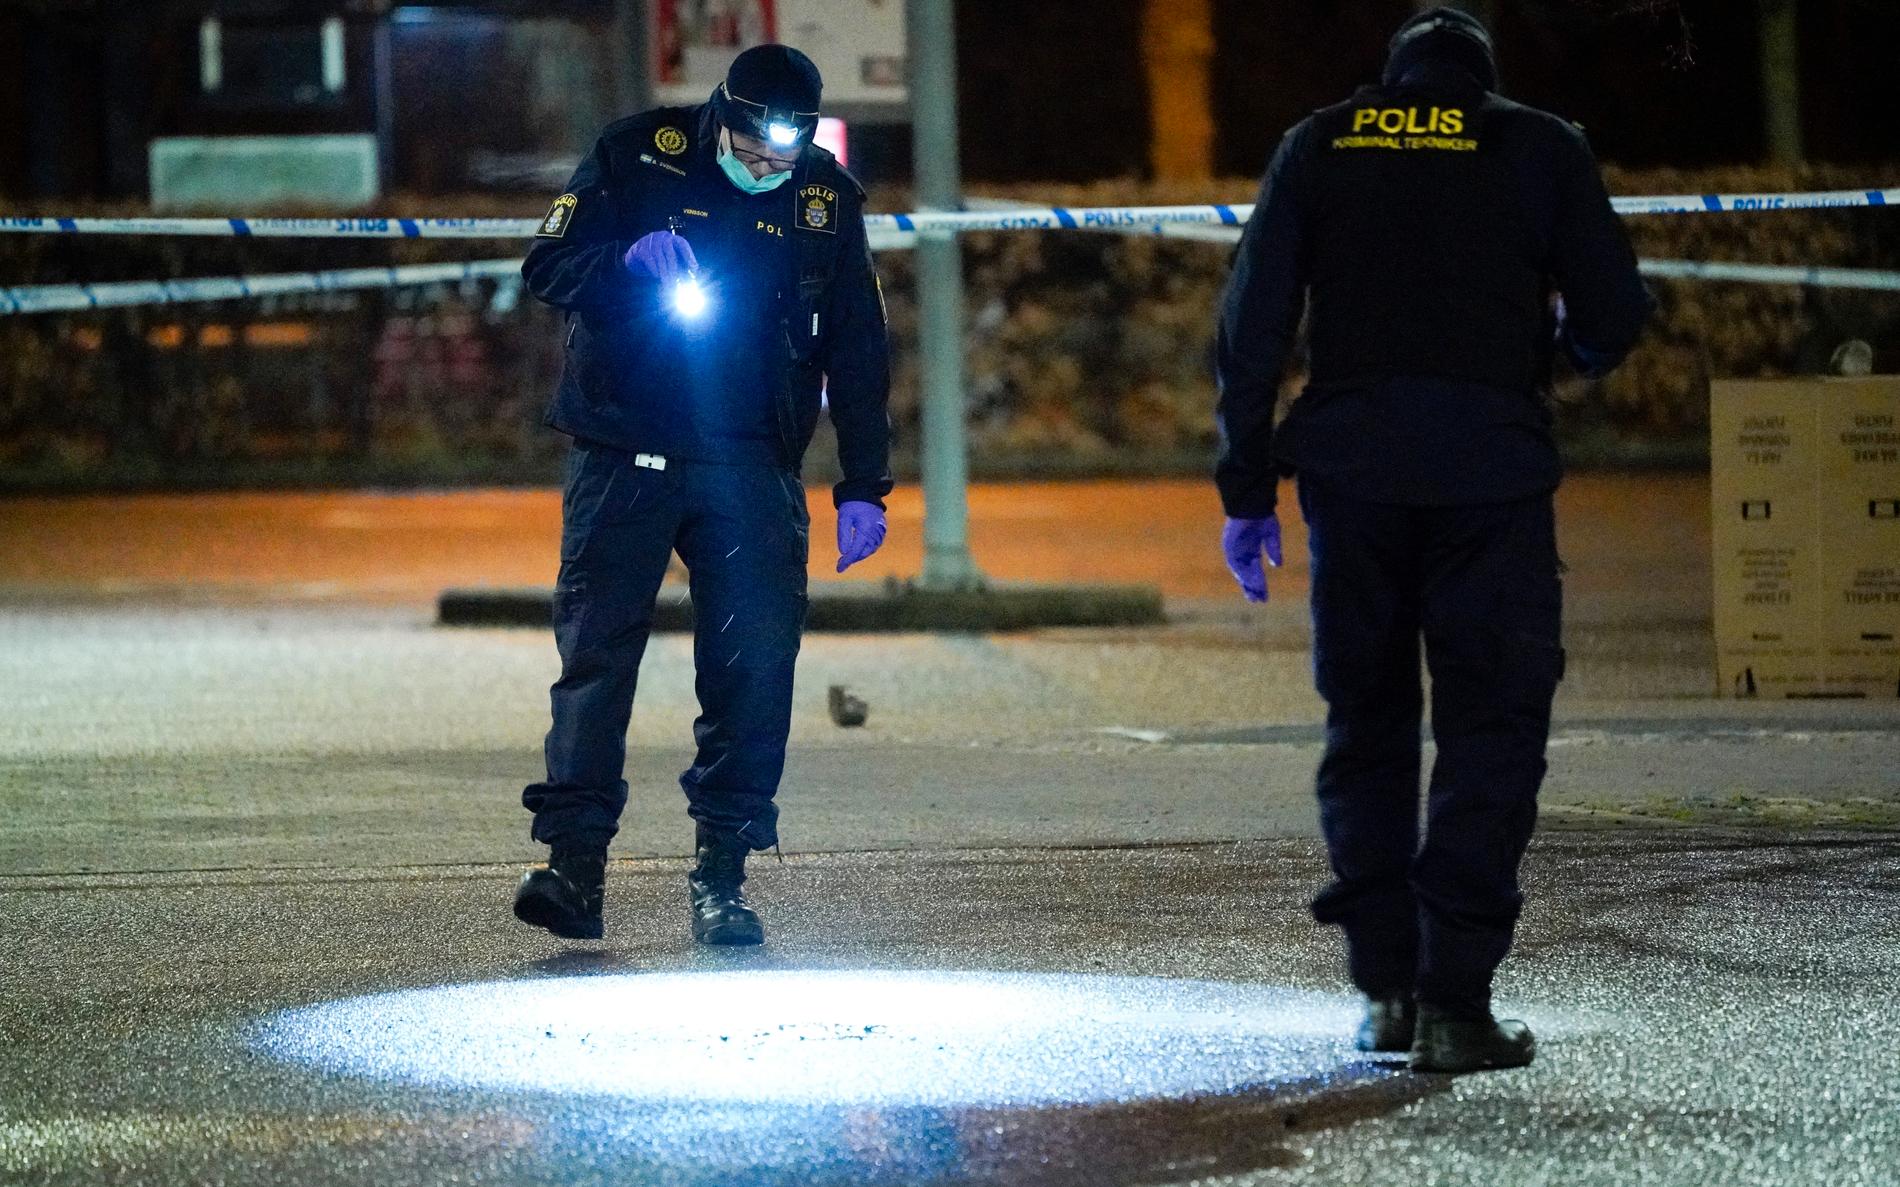 Polisens kriminaltekniker arbetar innanför avspärrningarna på en butiksparkering på i Helsingborg efter att en man hittats med stickskador på onsdagskvällen.